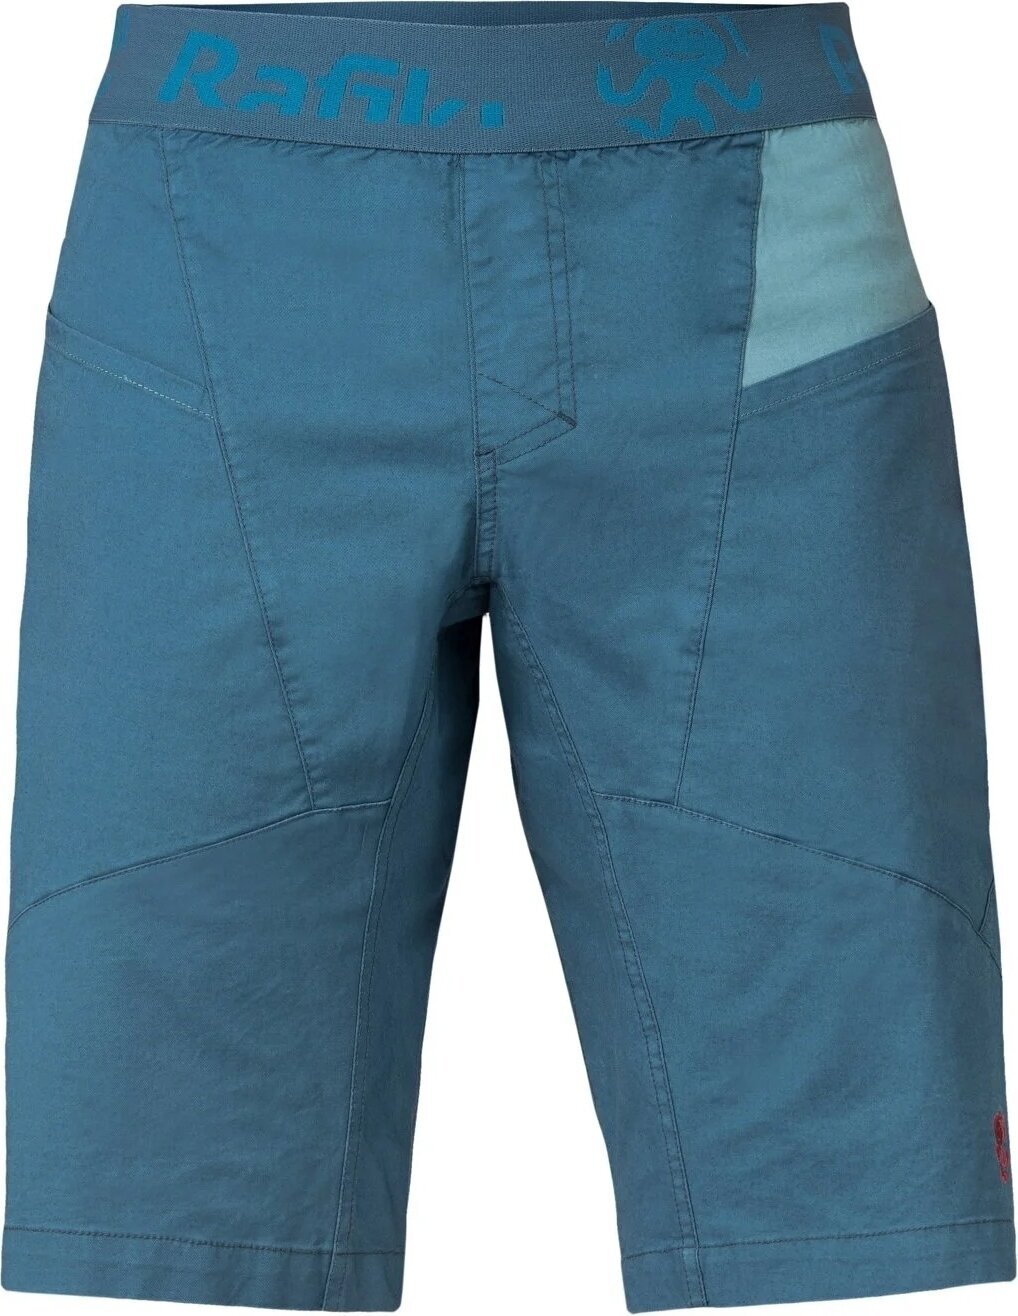 Къси панталонки Rafiki Megos Man Shorts Stargazer/Atlantic XL Къси панталонки